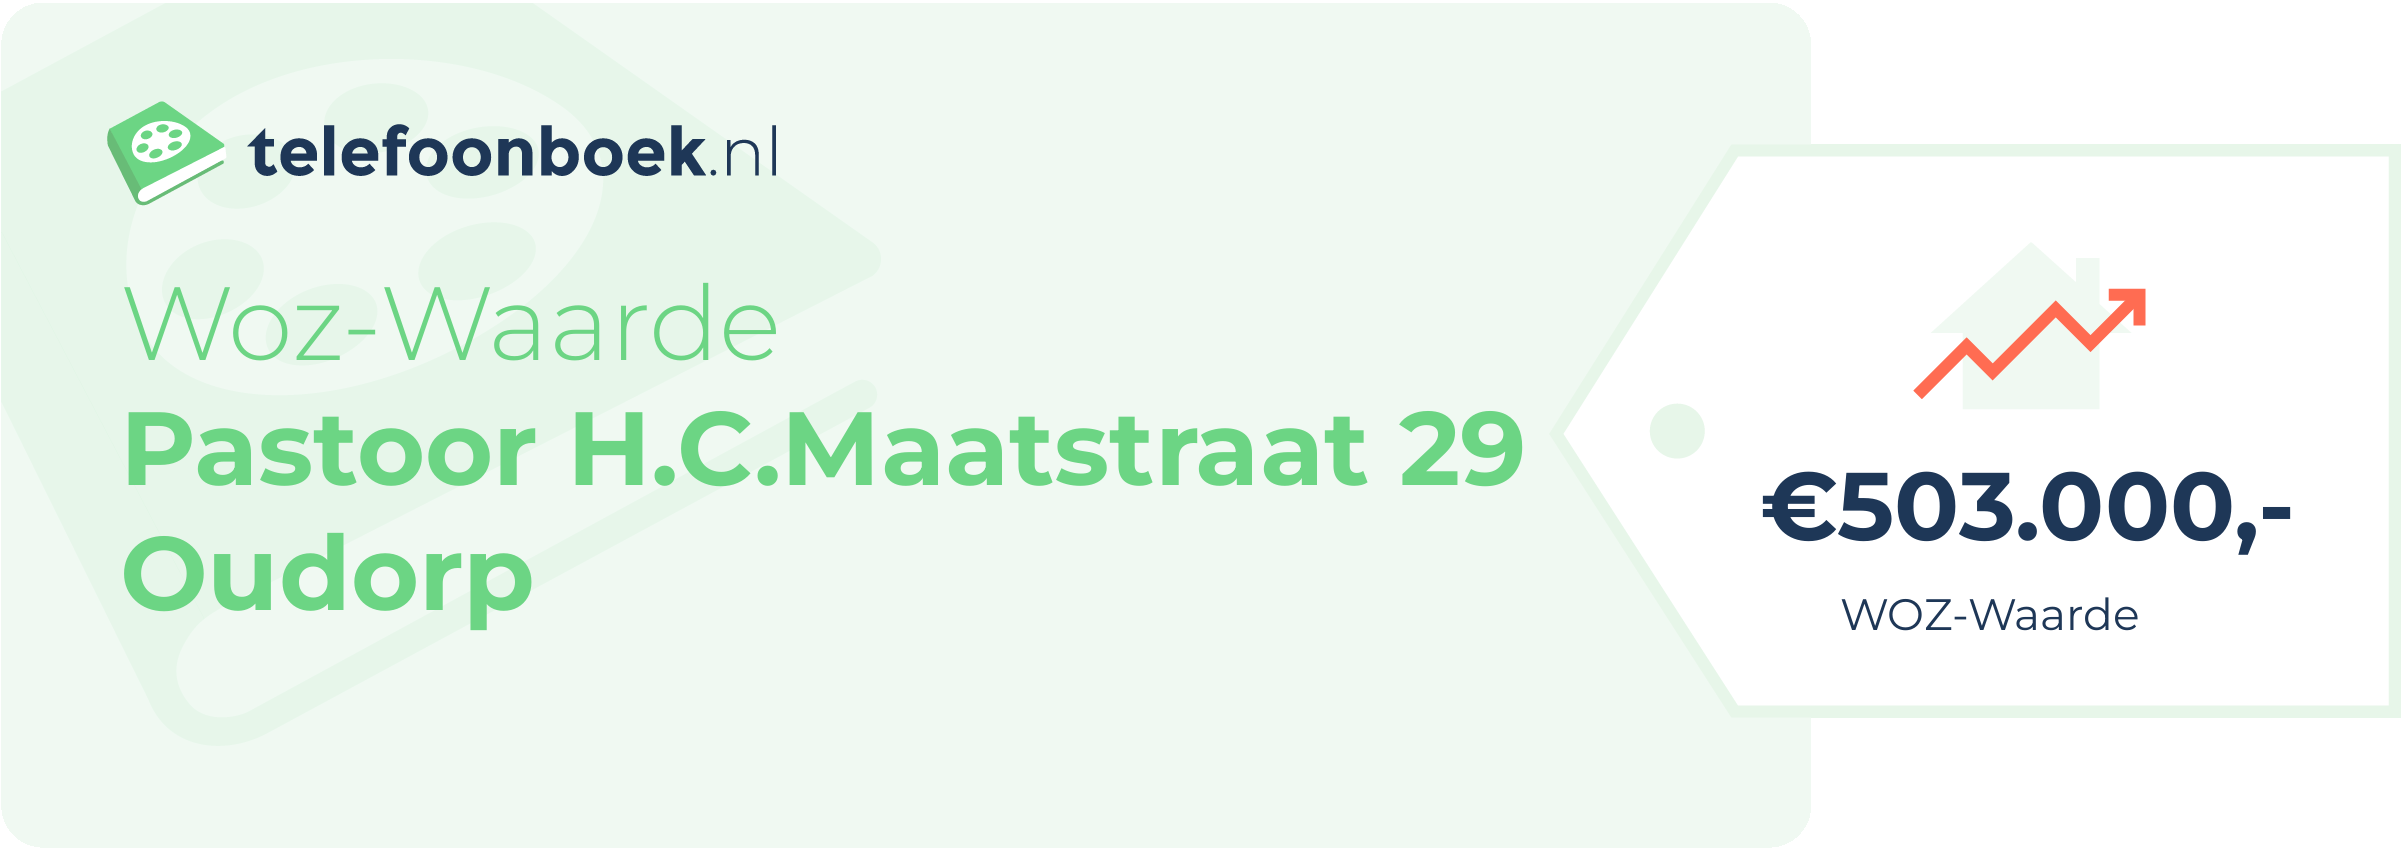 WOZ-waarde Pastoor H.C.Maatstraat 29 Oudorp